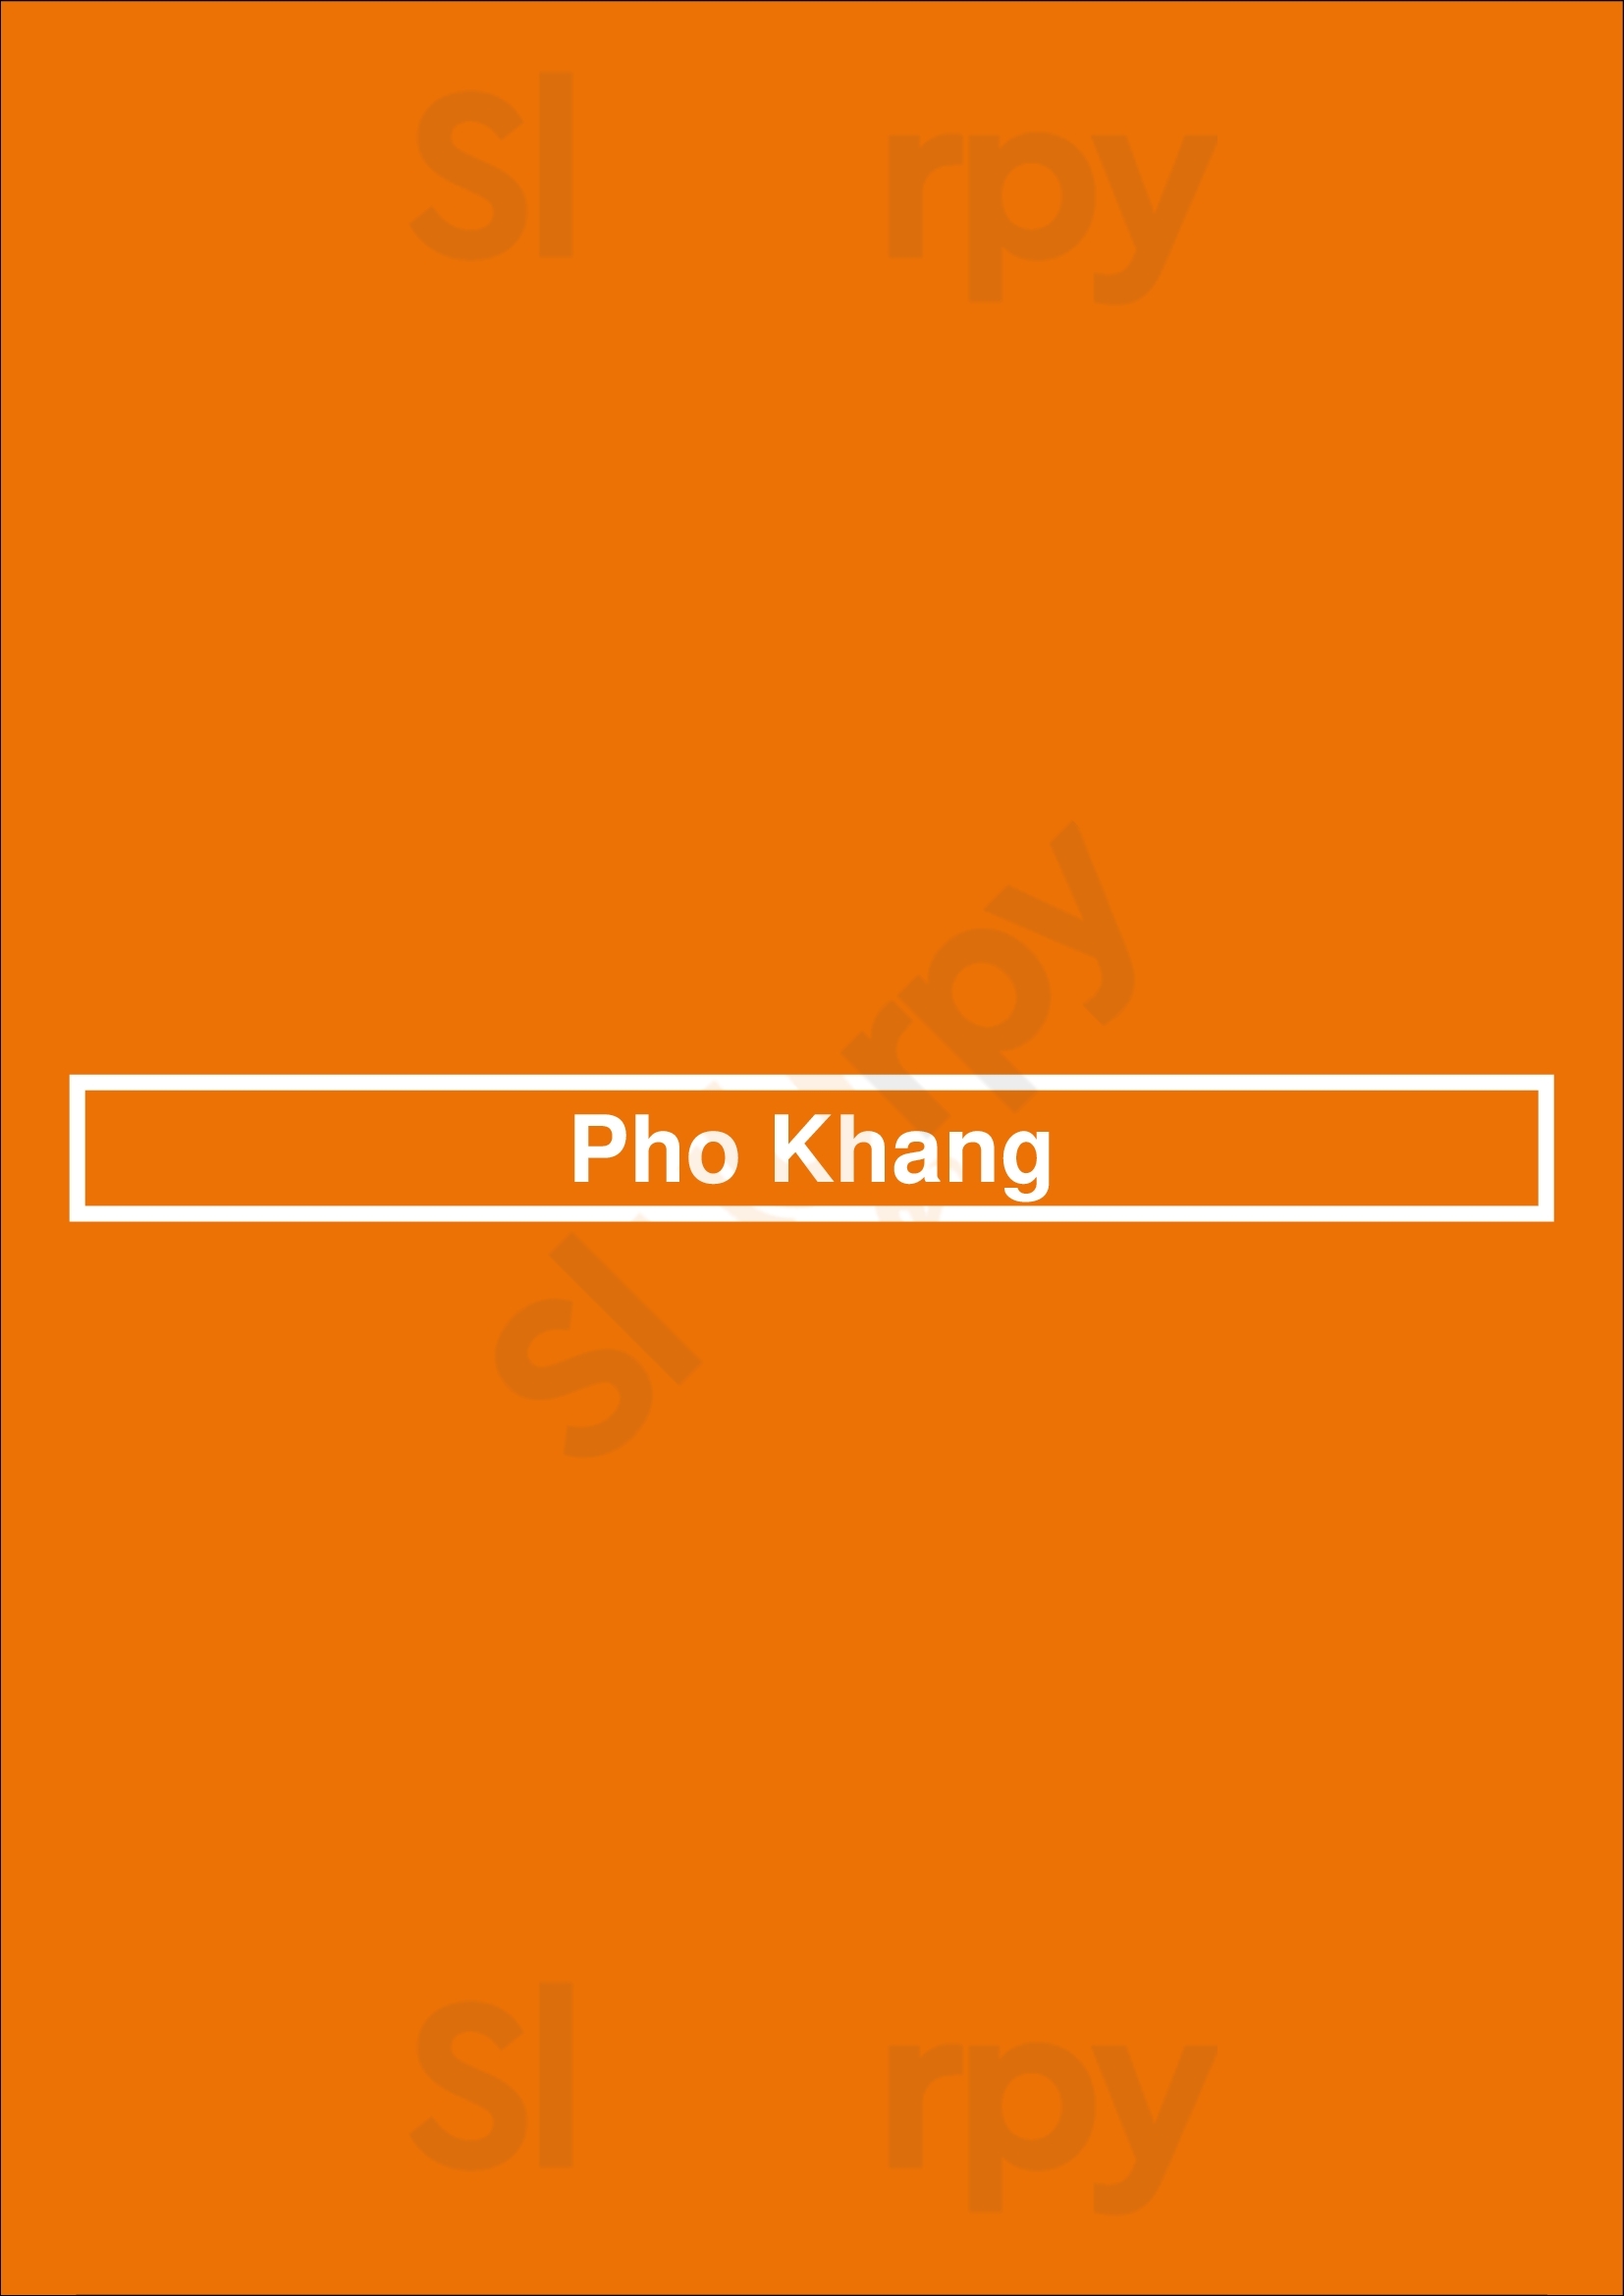 Pho Khang Centennial Menu - 1